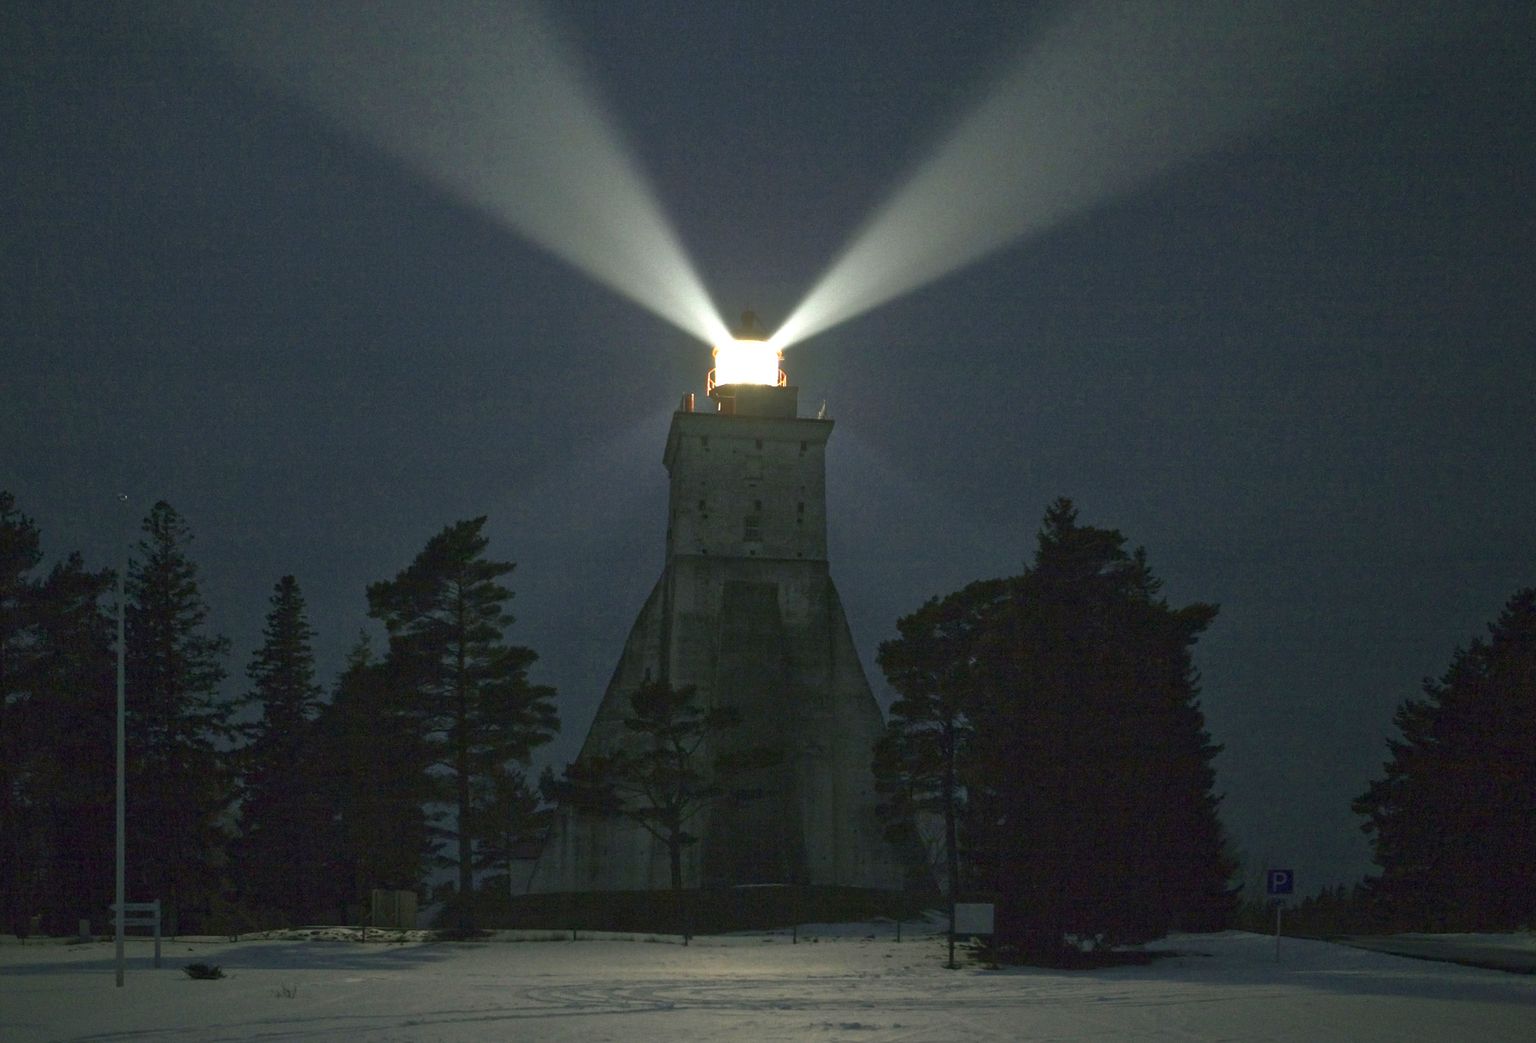 Kõpu tuletorn öösel. Moderniseerimise järel säilis Kõpule omapärane ja Eestis ainulaadne pöörlev valgusvihk, mis on Kõpu tuletorni iseloomustanud juba viimased 160 aastat.